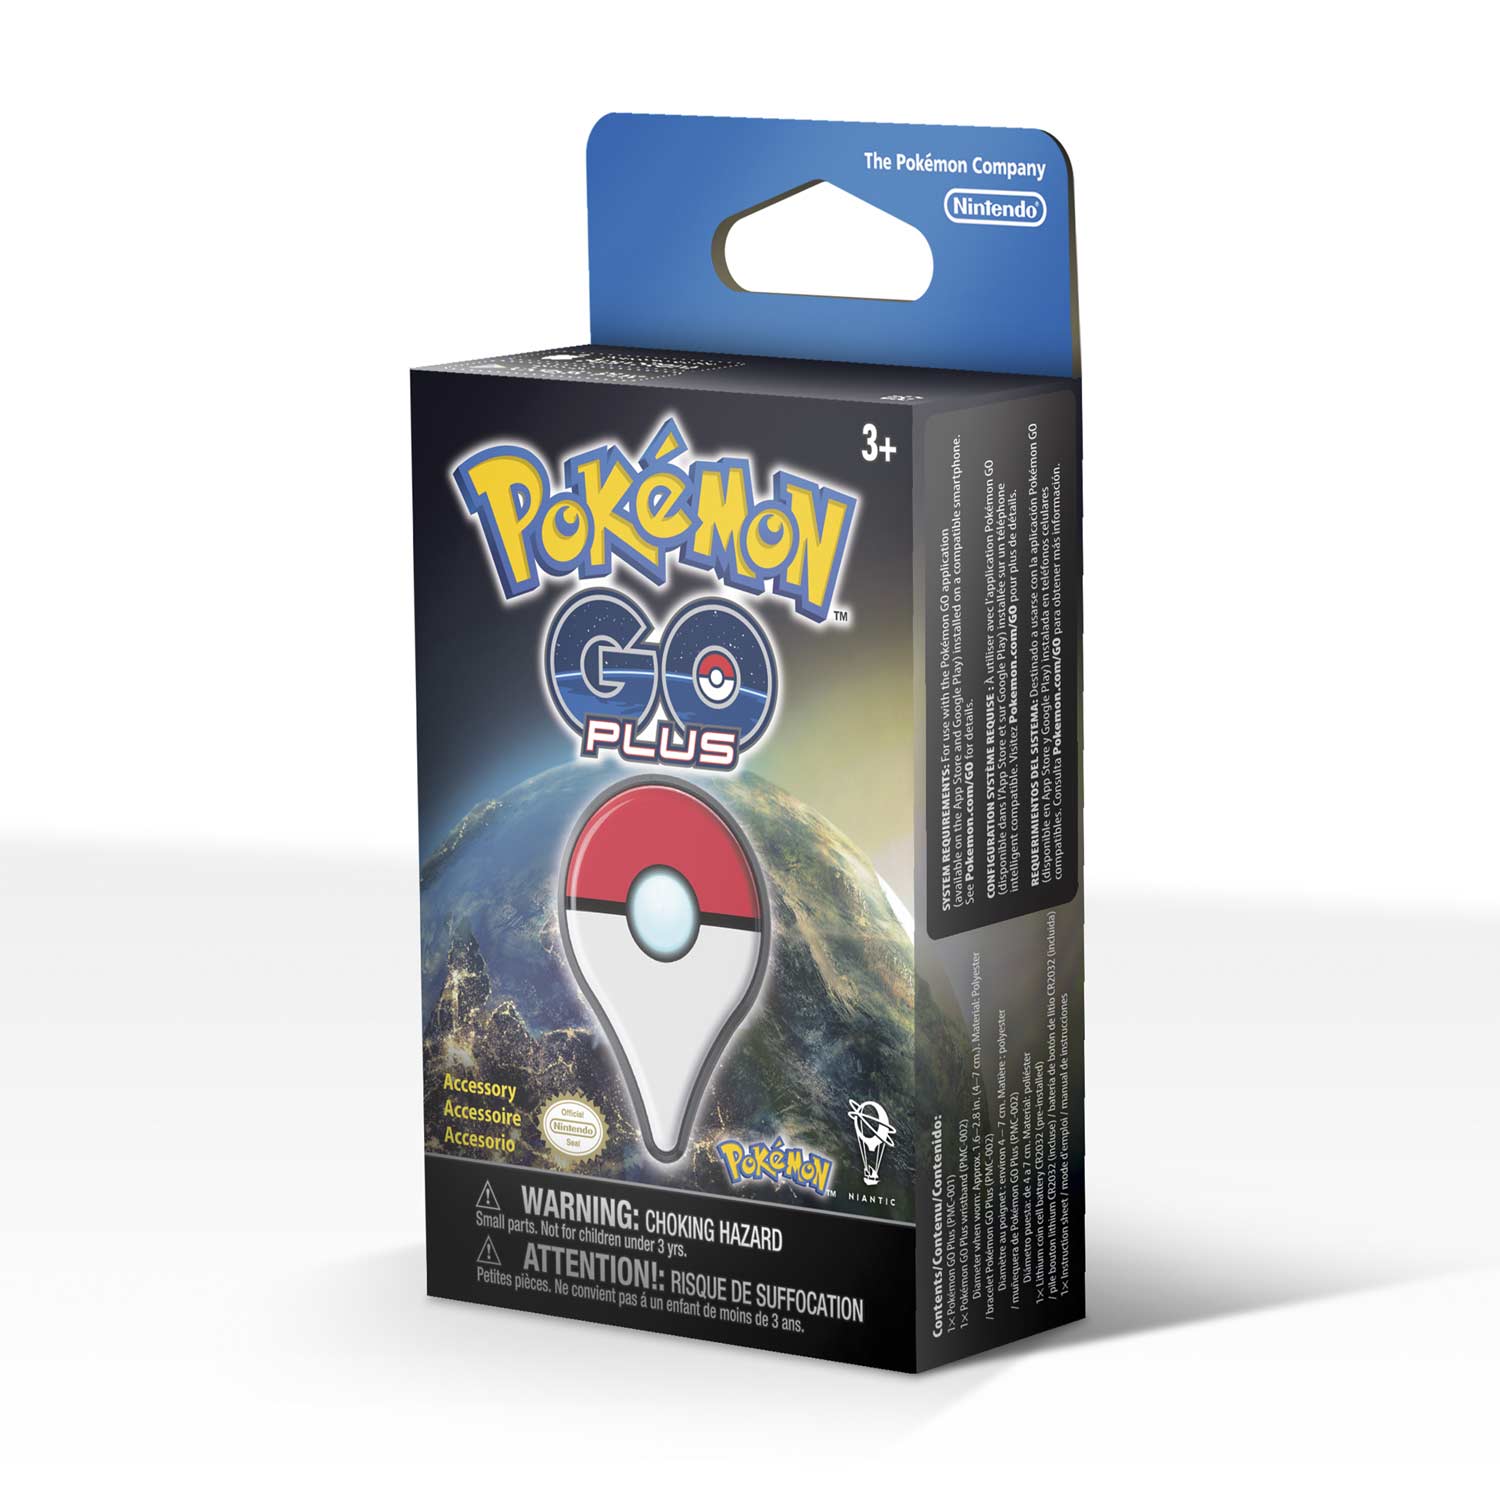 Pokémon GO Plus | Wristband Accessory | Catch Pokémon in the game1500 x 1500